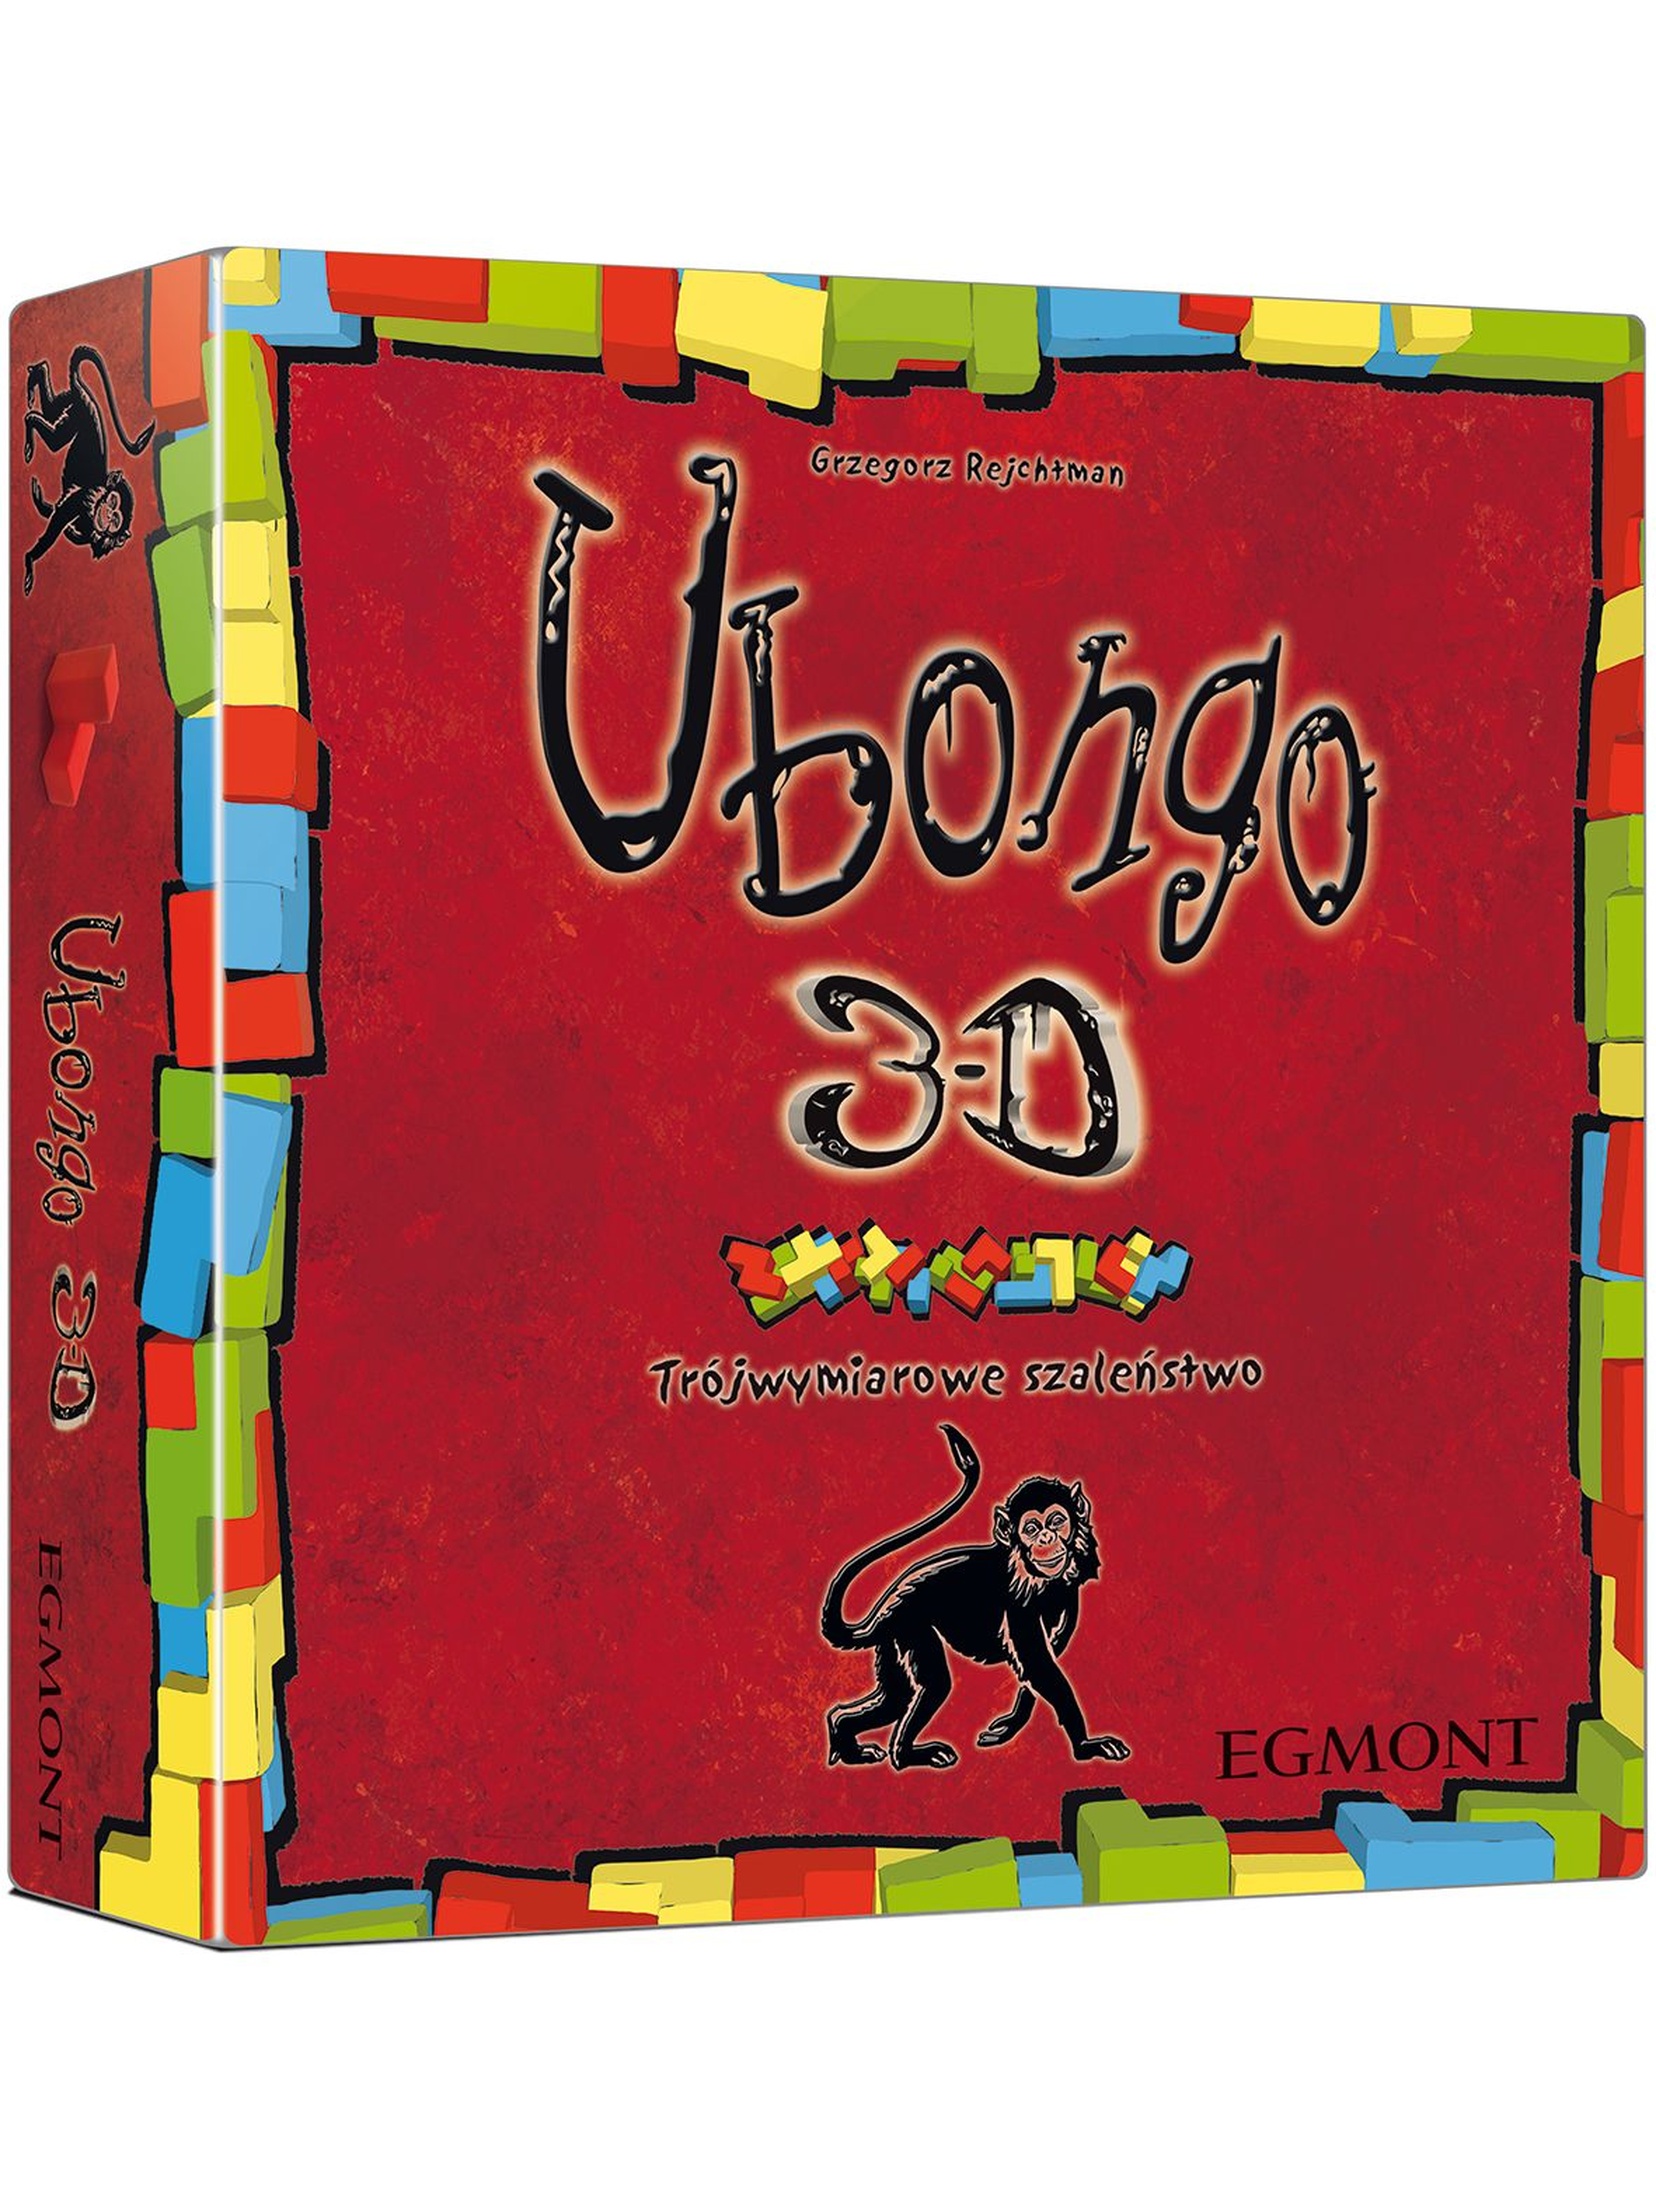 Gry dziecięce -  Ubongo 3D